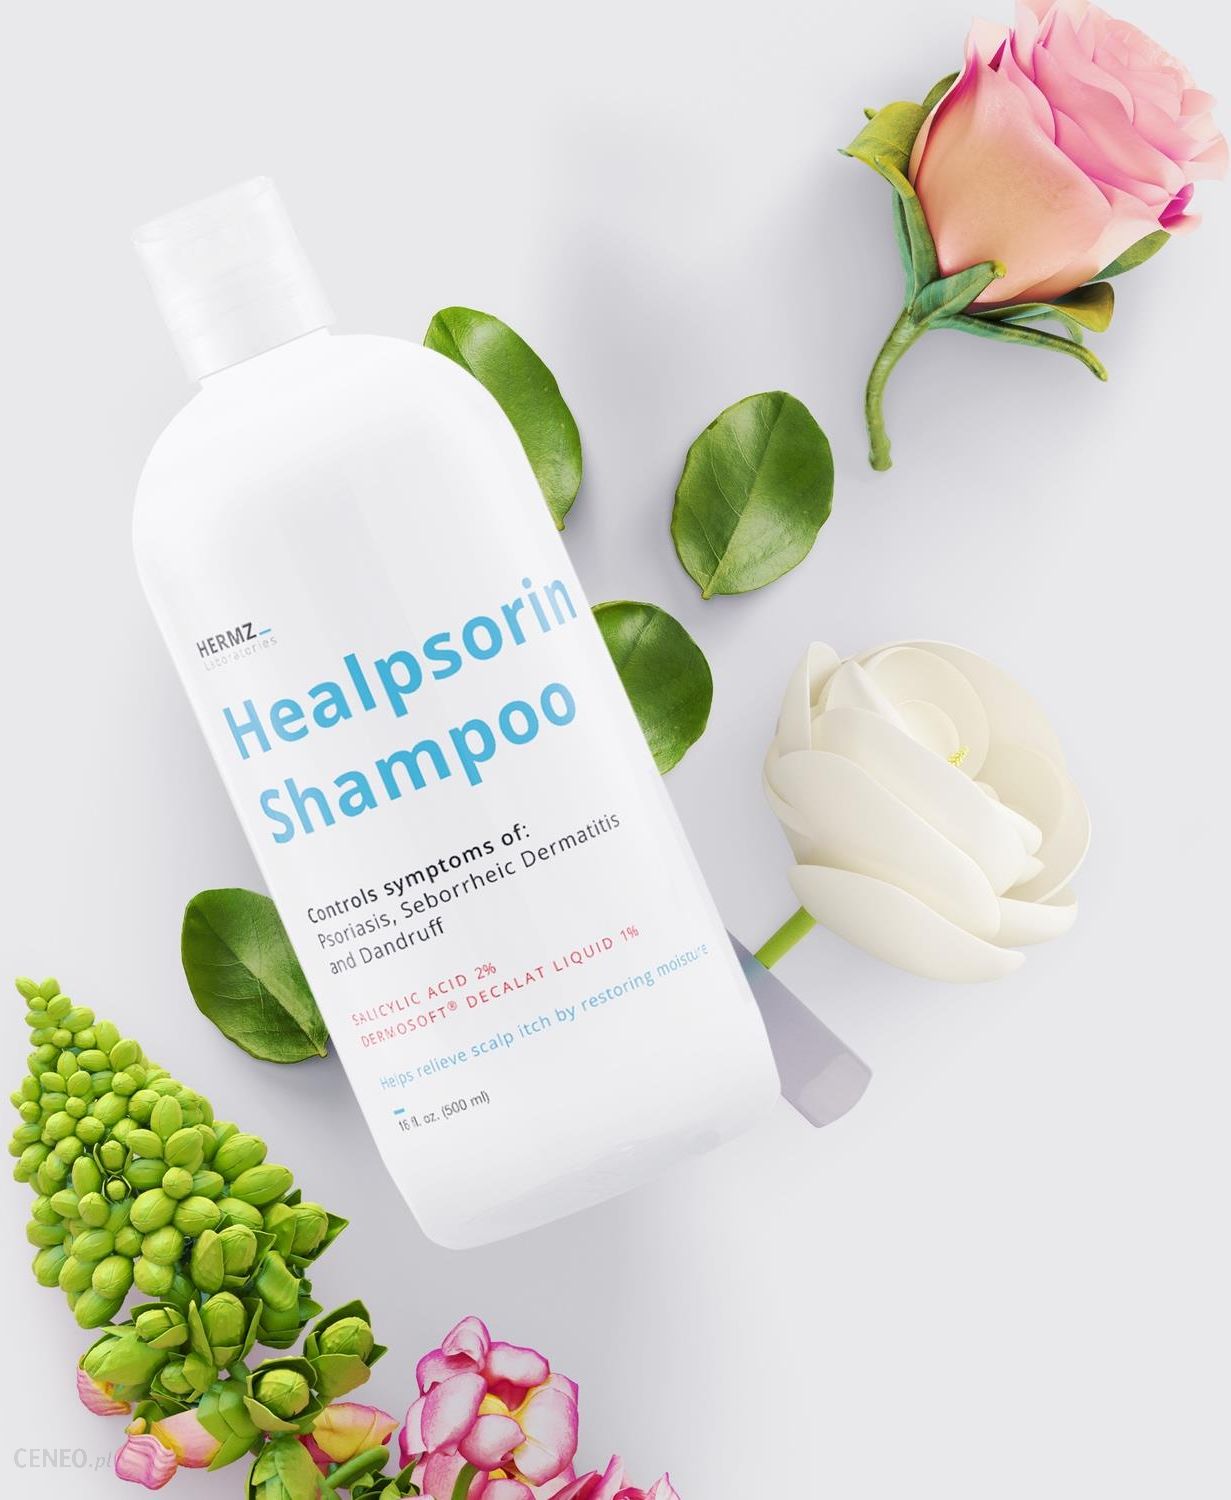 szampon healpsorin gdzie kupic